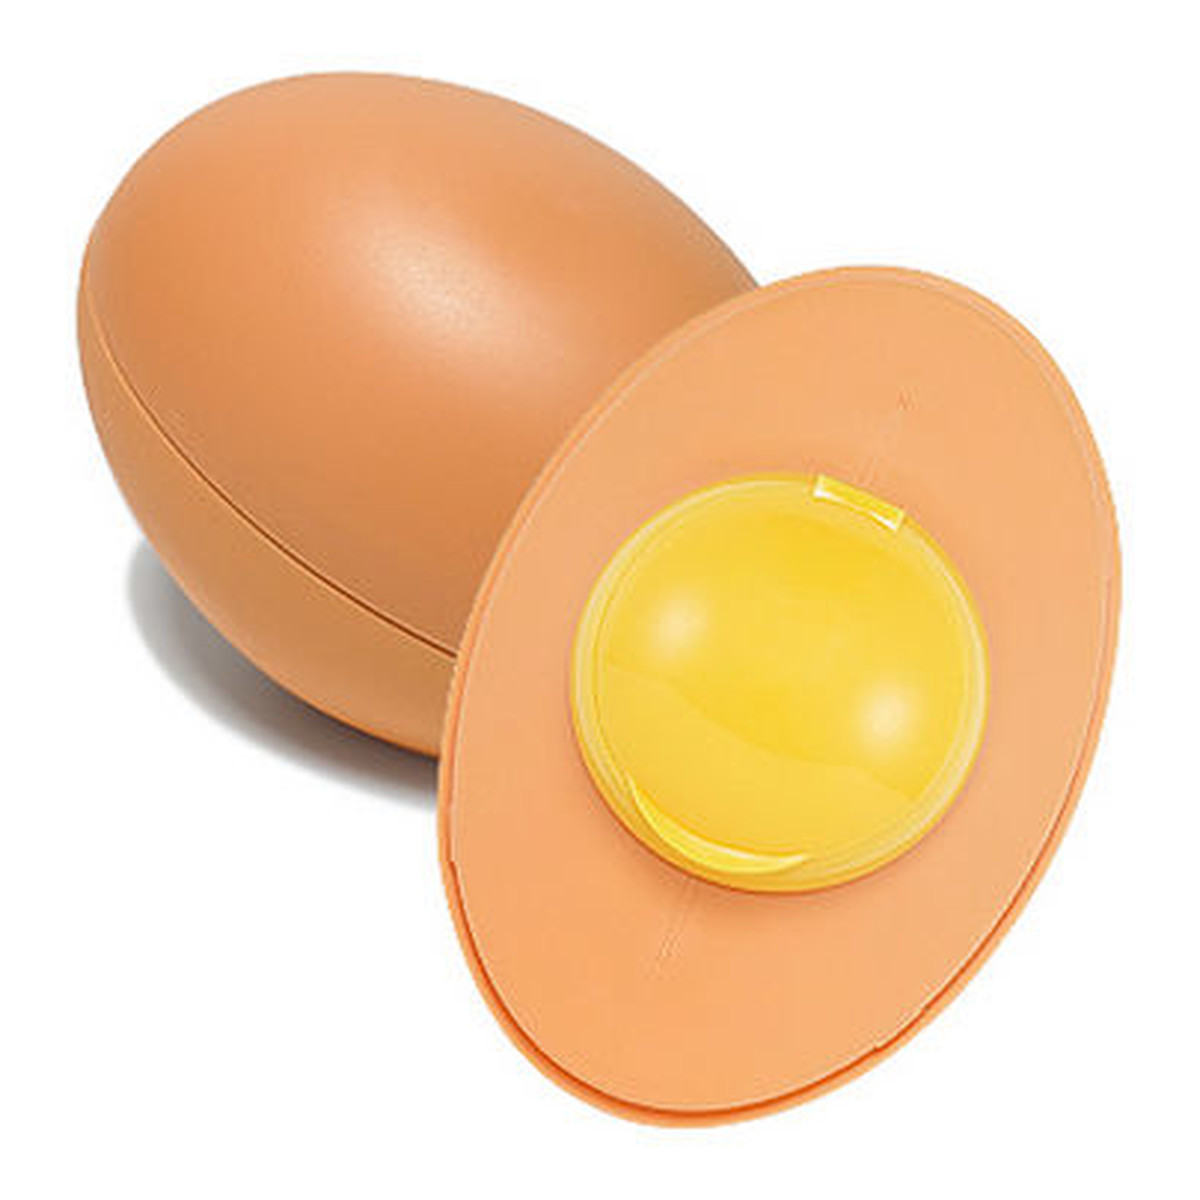 Holika Holika Sleek Egg Skin Pianka myjąca do twarzy 140ml